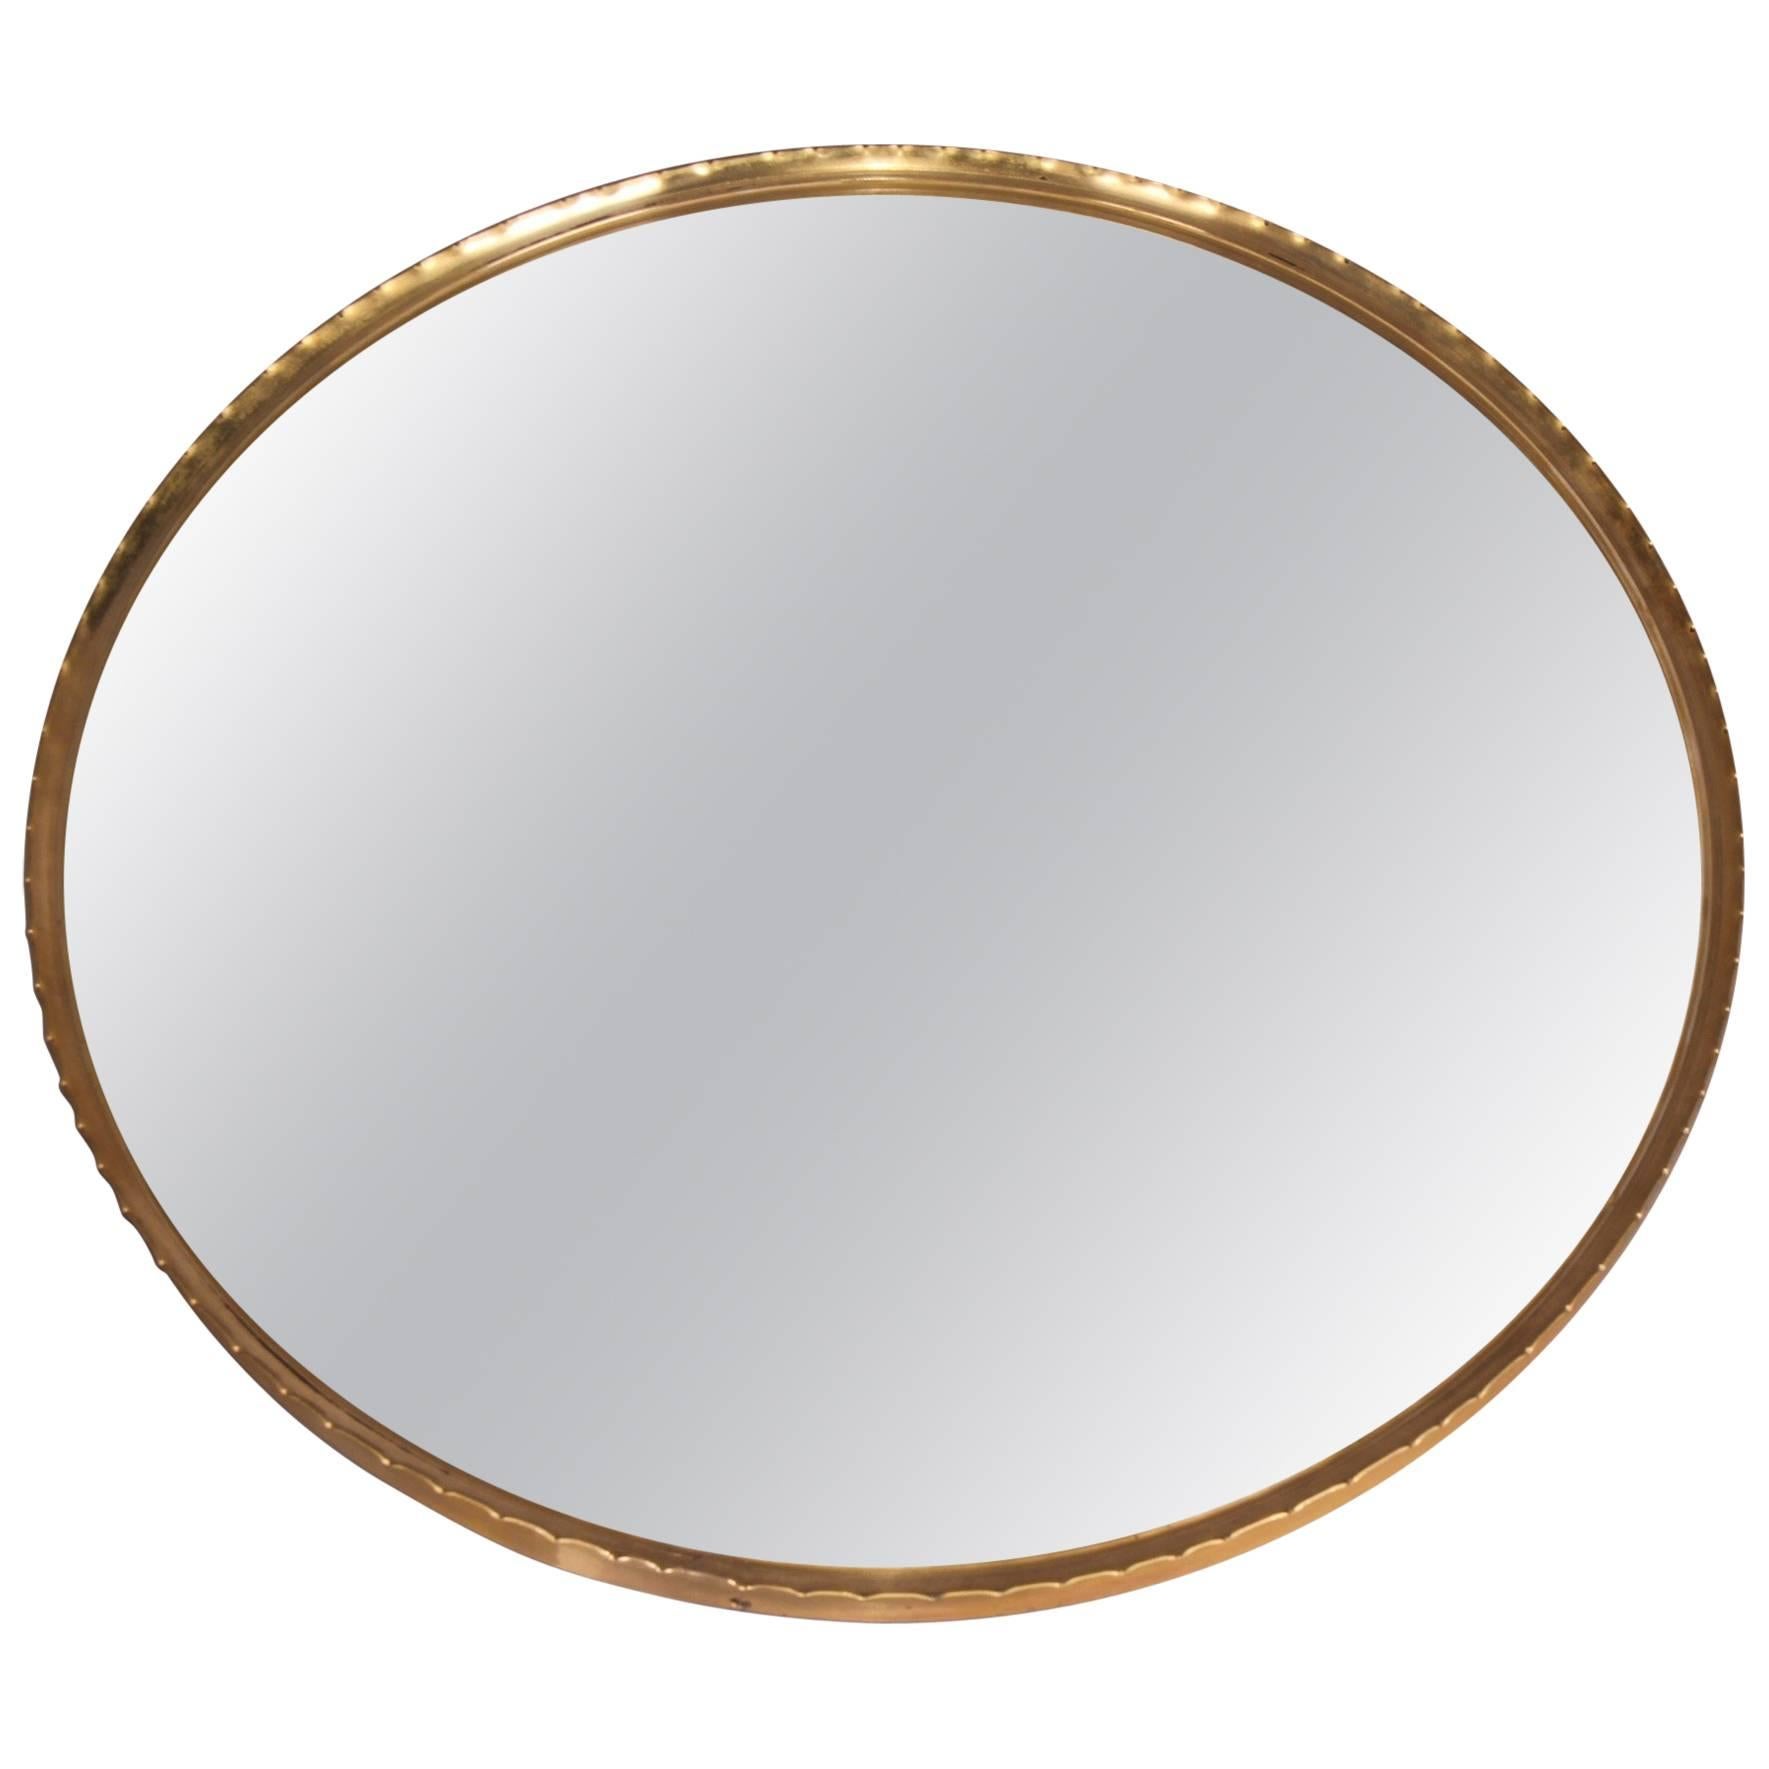 Round Brass Josef Frank Style Mirror